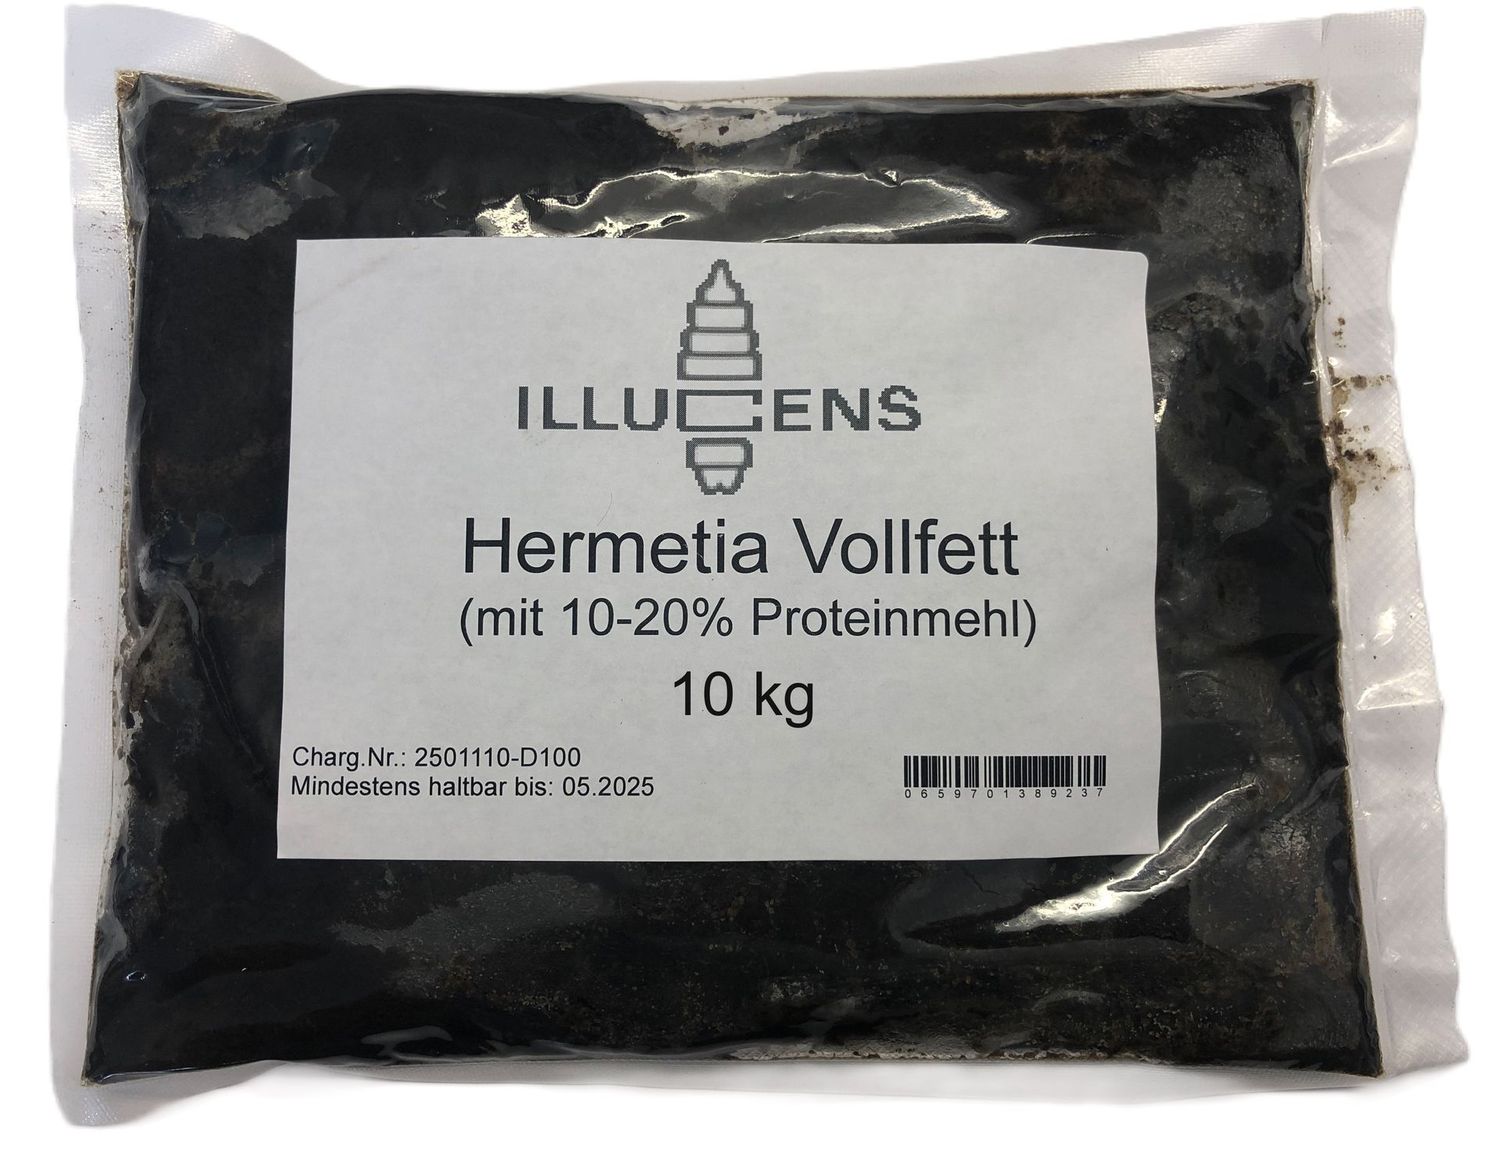 Hermetia Vollfett -Lipid- 10 kg -
6,50 €/kg